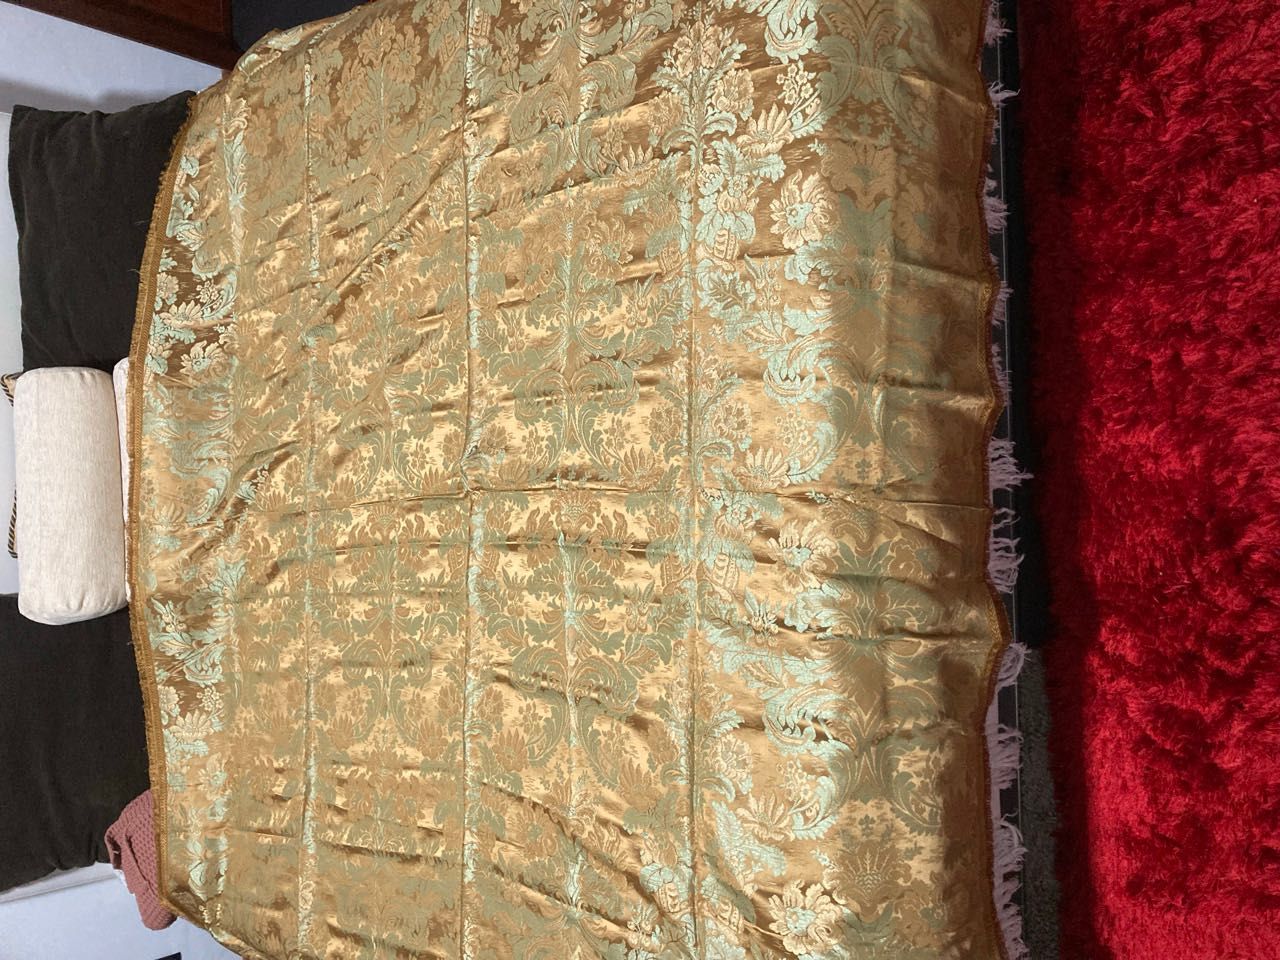 Colcha de cama dourada tons esverdeados 195x225 cm e colcha trabalhada